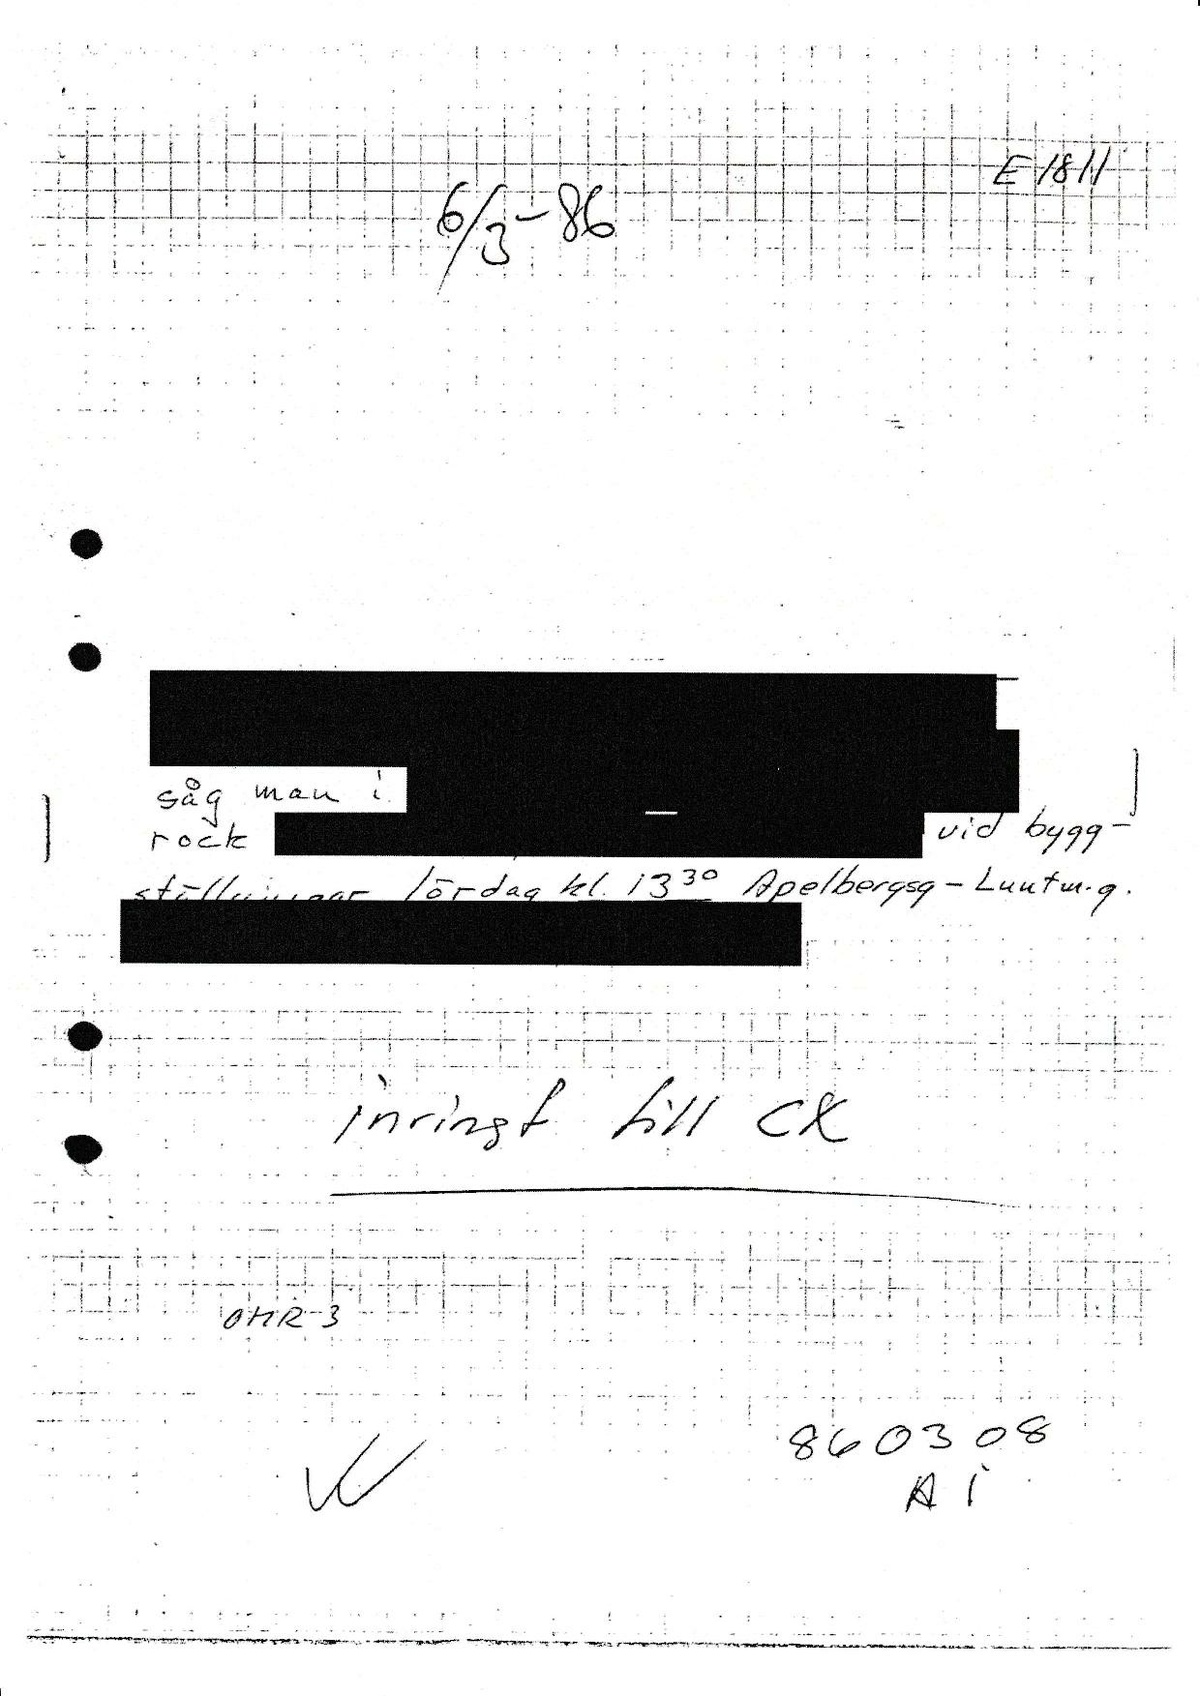 Pol-1986-03-01 1330 EAF1811-00 iakttagelse av person ApelbergsgLuntmakarg.pdf